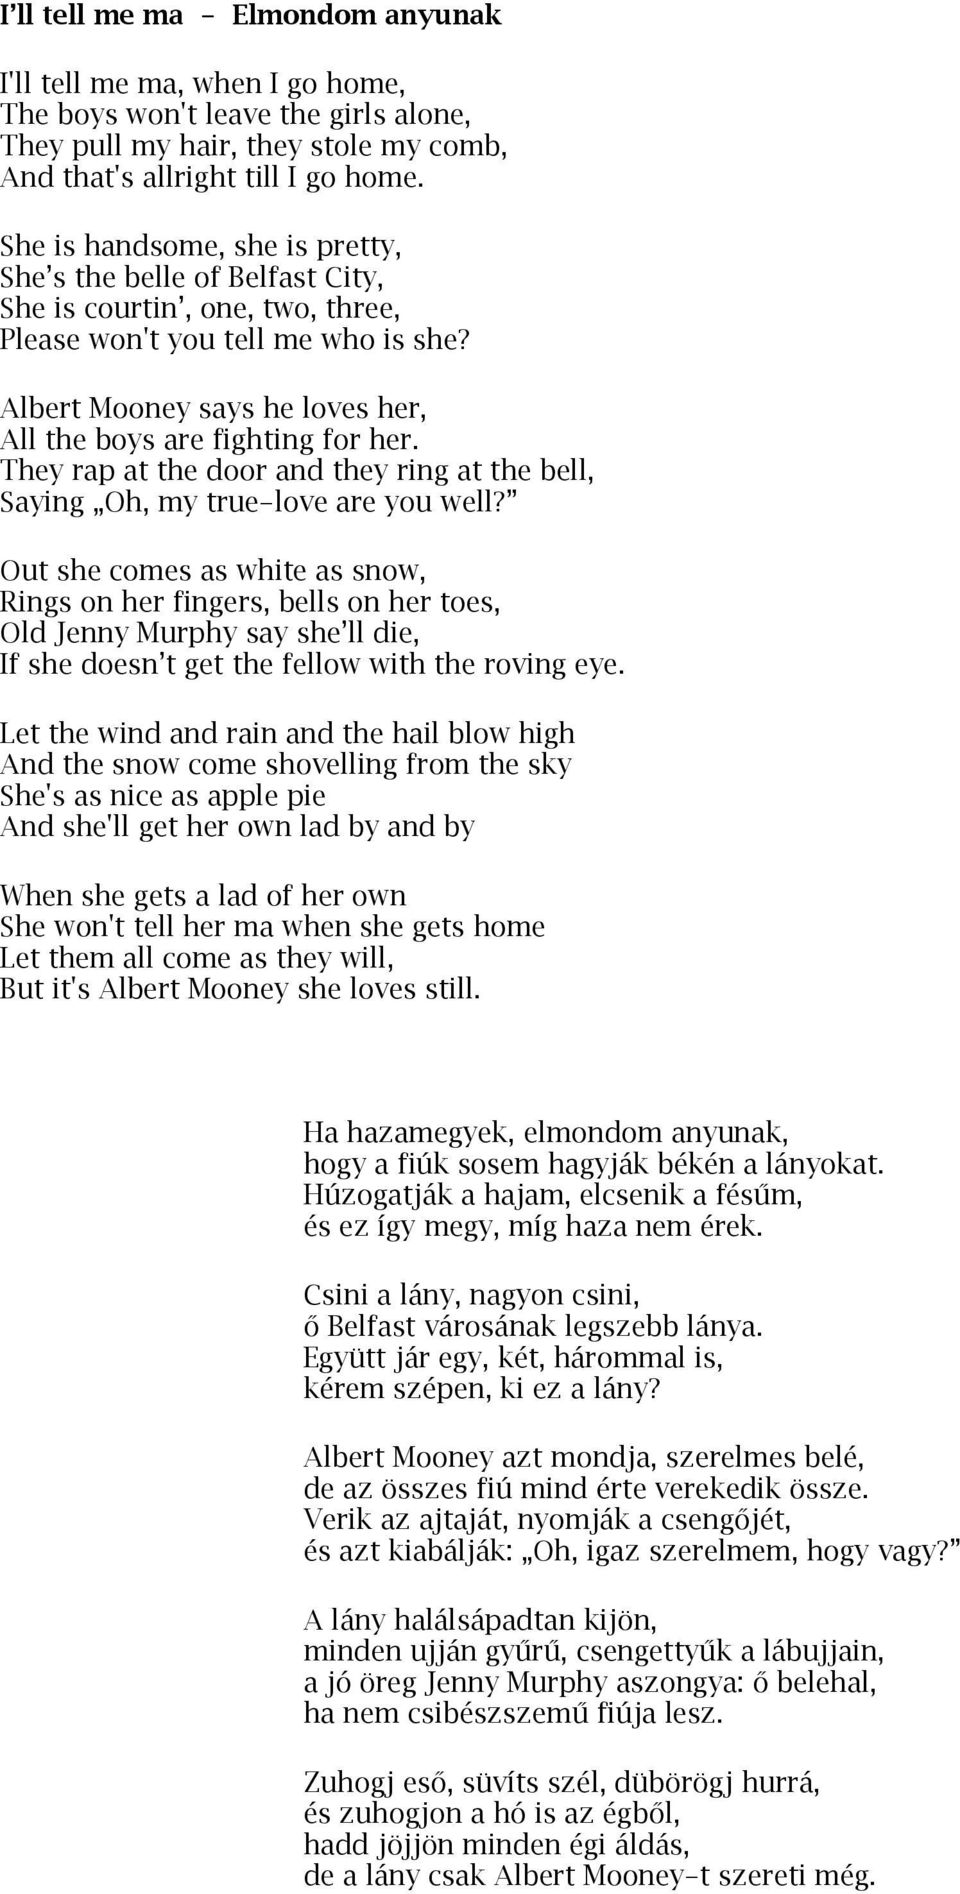 Greenfields együttes. Ír dalszövegek angolul és magyarul. (Nyersfordítások:  Bocskai István) - PDF Ingyenes letöltés